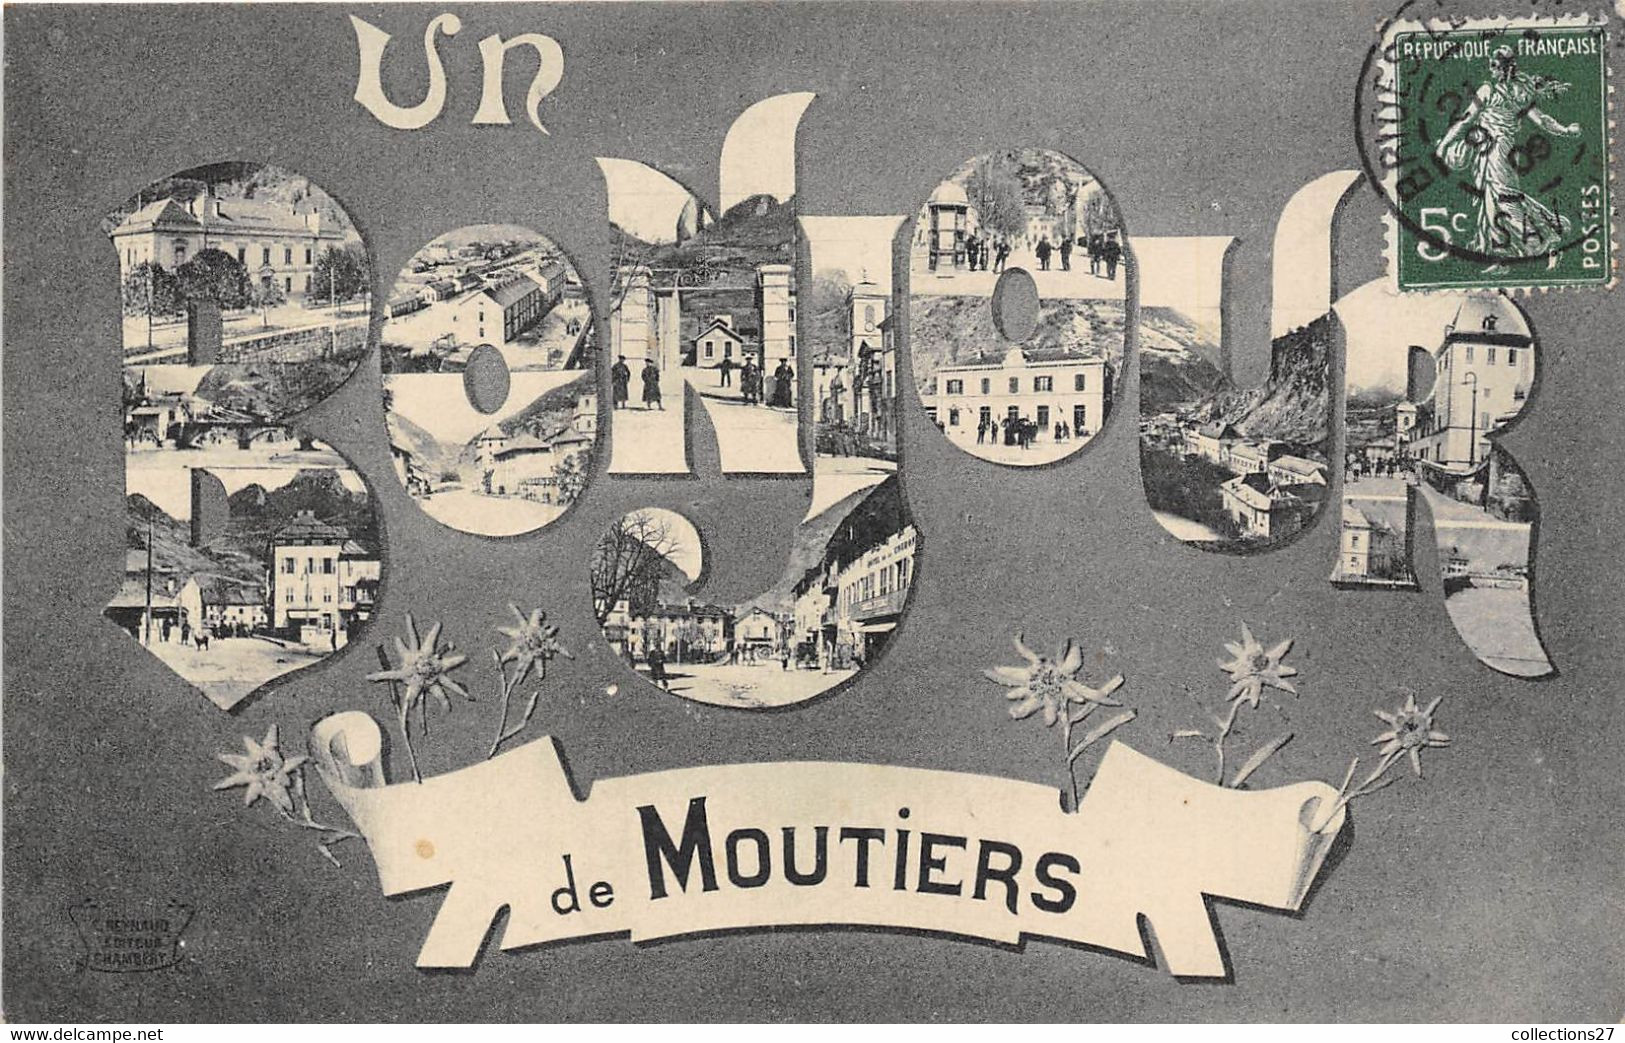 73-MOUTIERS- UN BONJOUR DE MOUTIERS MULTIVUES - Moutiers